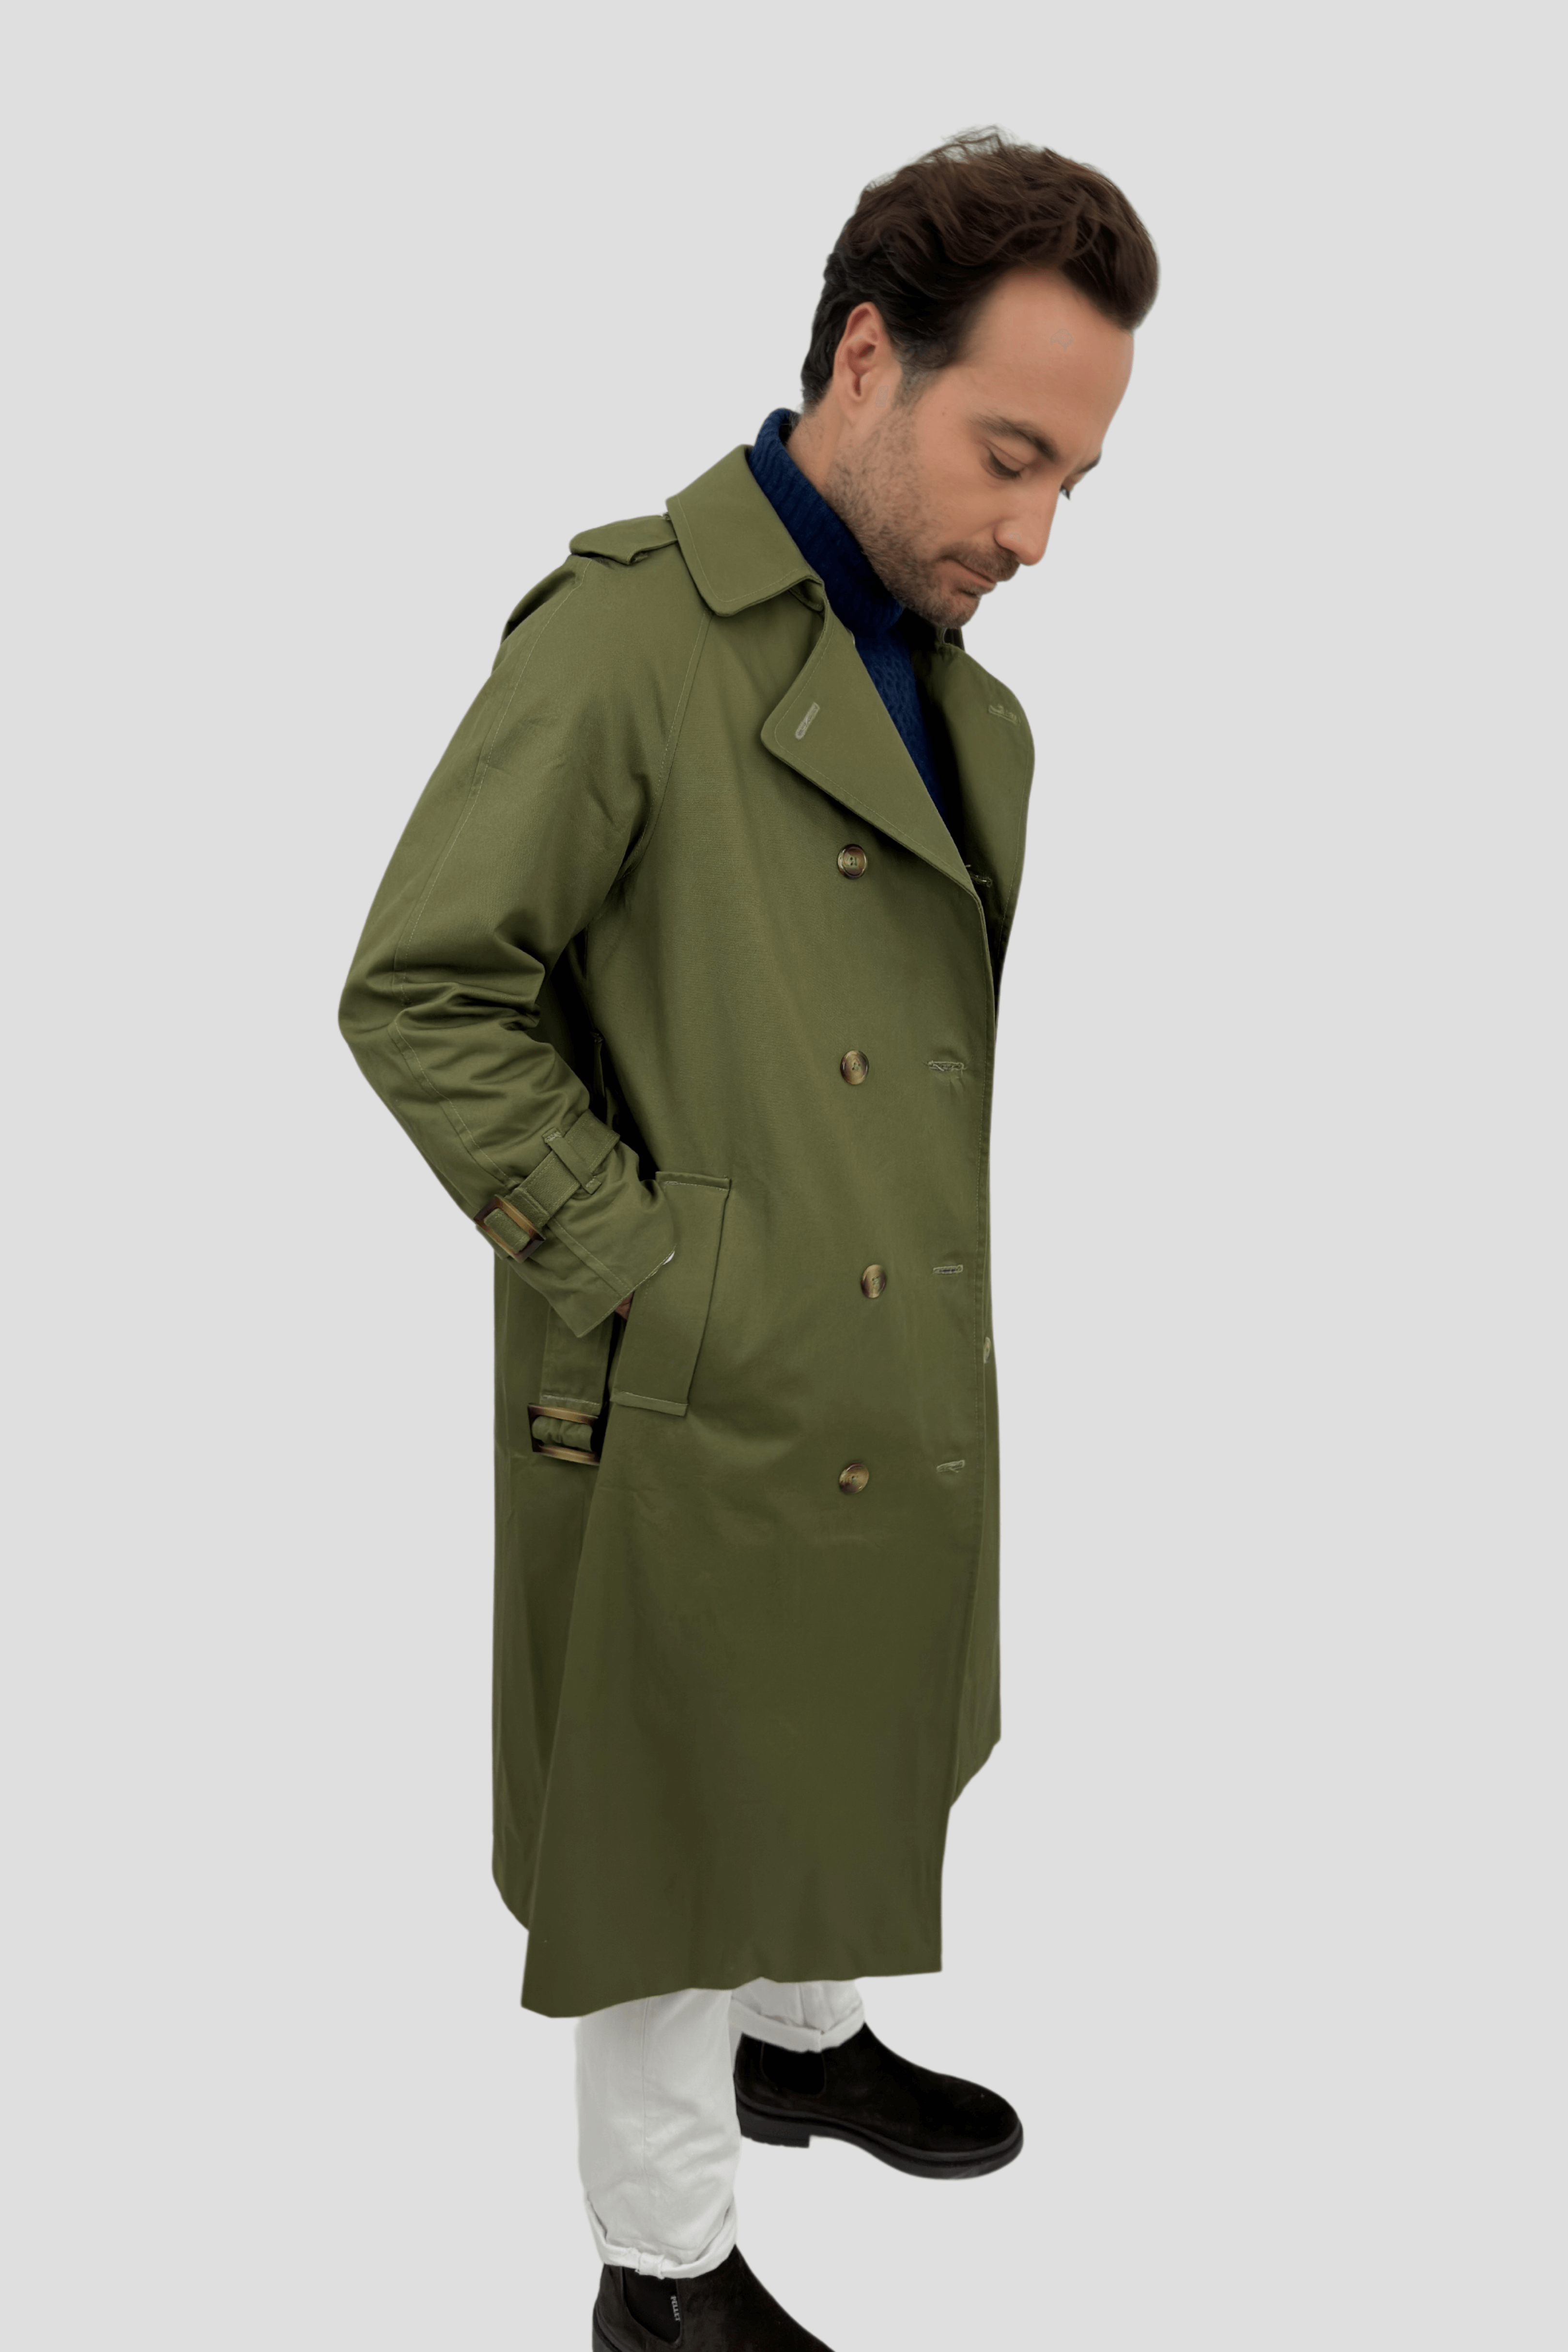 Produit à vendre manteau imperméable homme vert kaki made in france